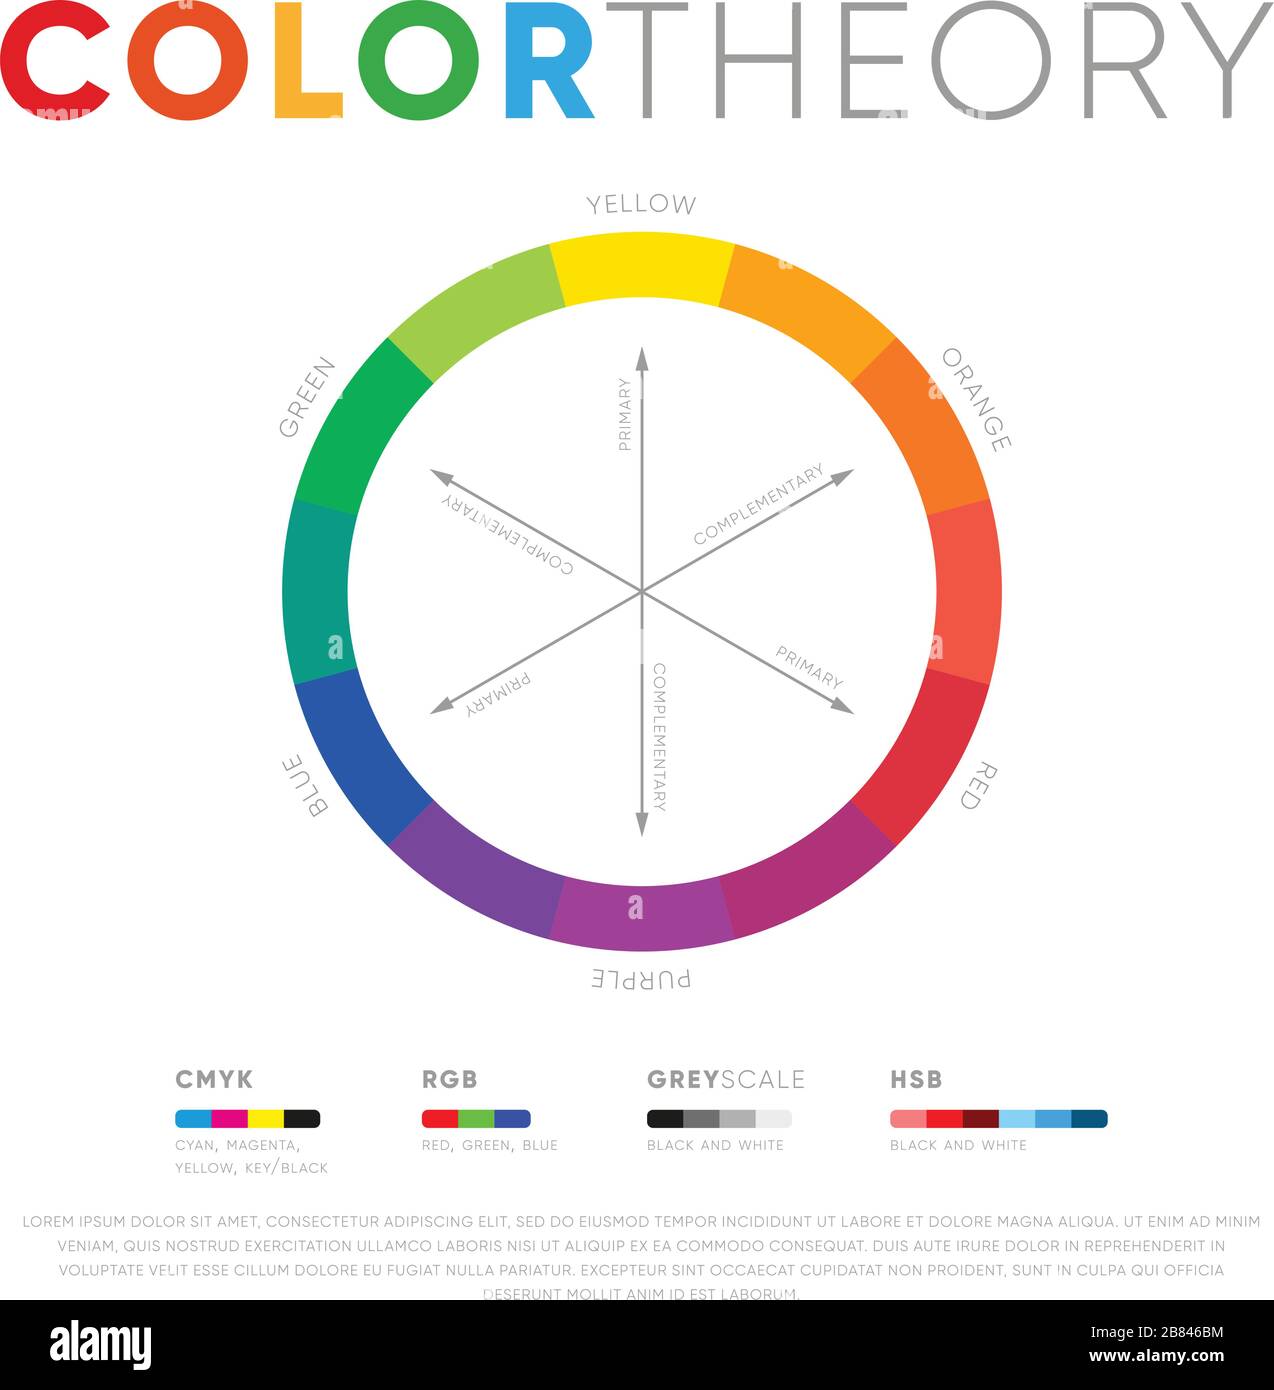 Cercle avec spectre de couleurs montrant la présentation de la théorie des couleurs isolée sur fond blanc Illustration de Vecteur